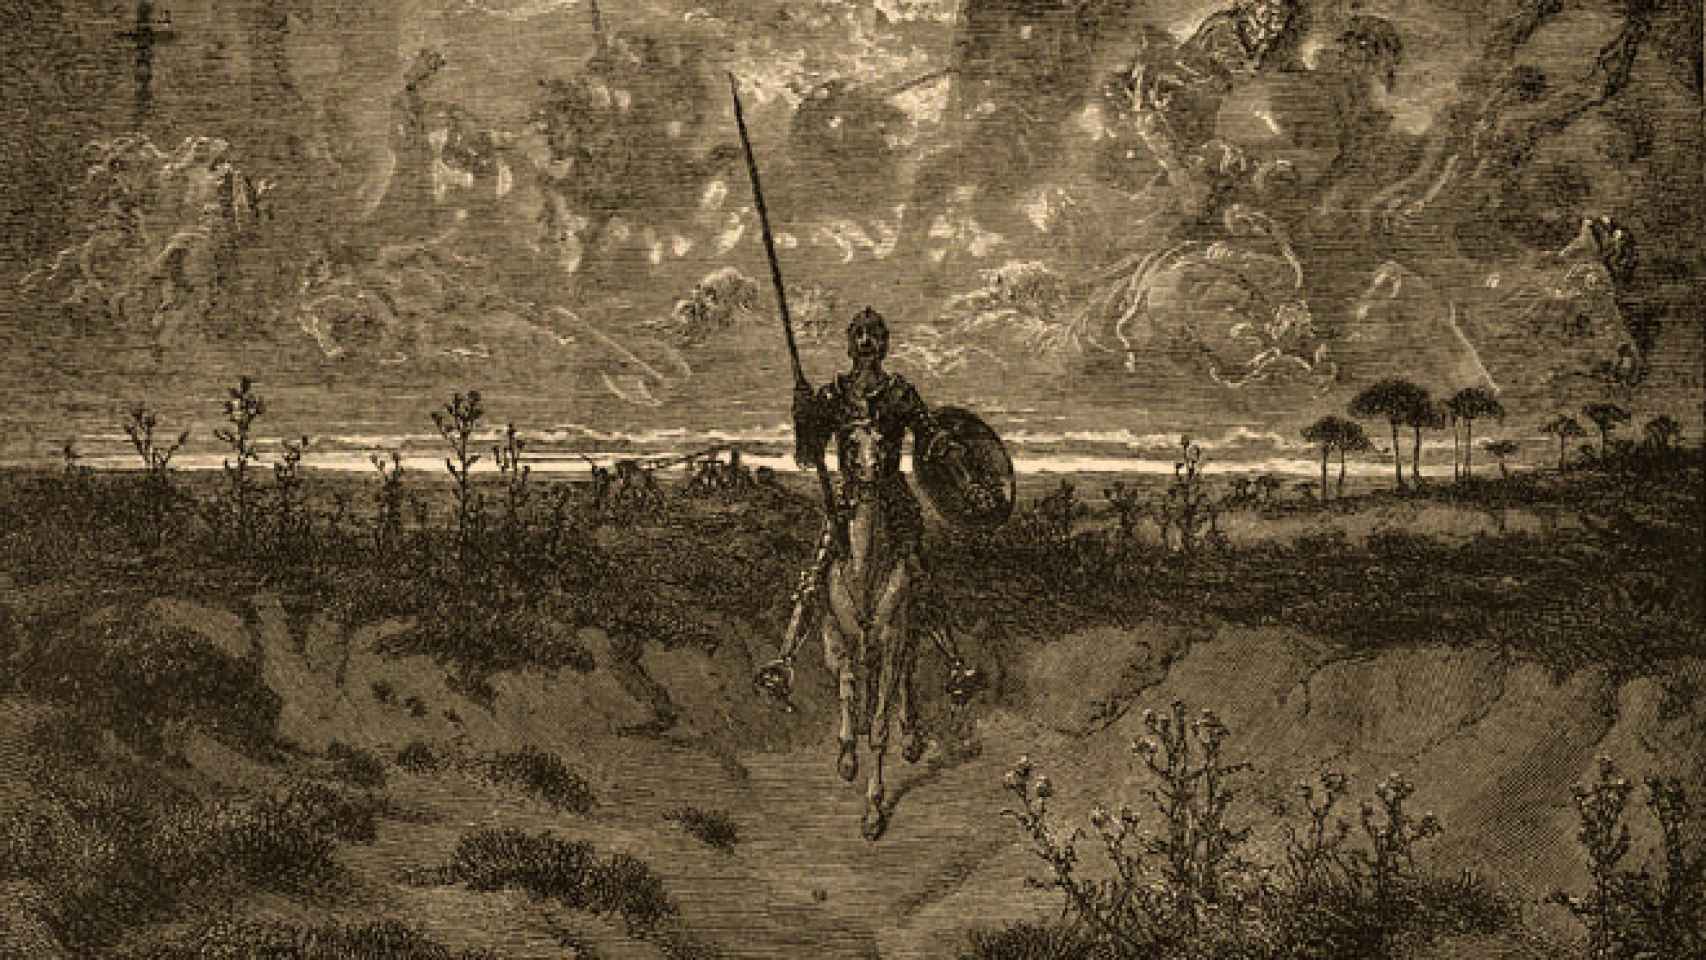 Ilustración de 'El Quijote' realizada por Gustavo Doré.